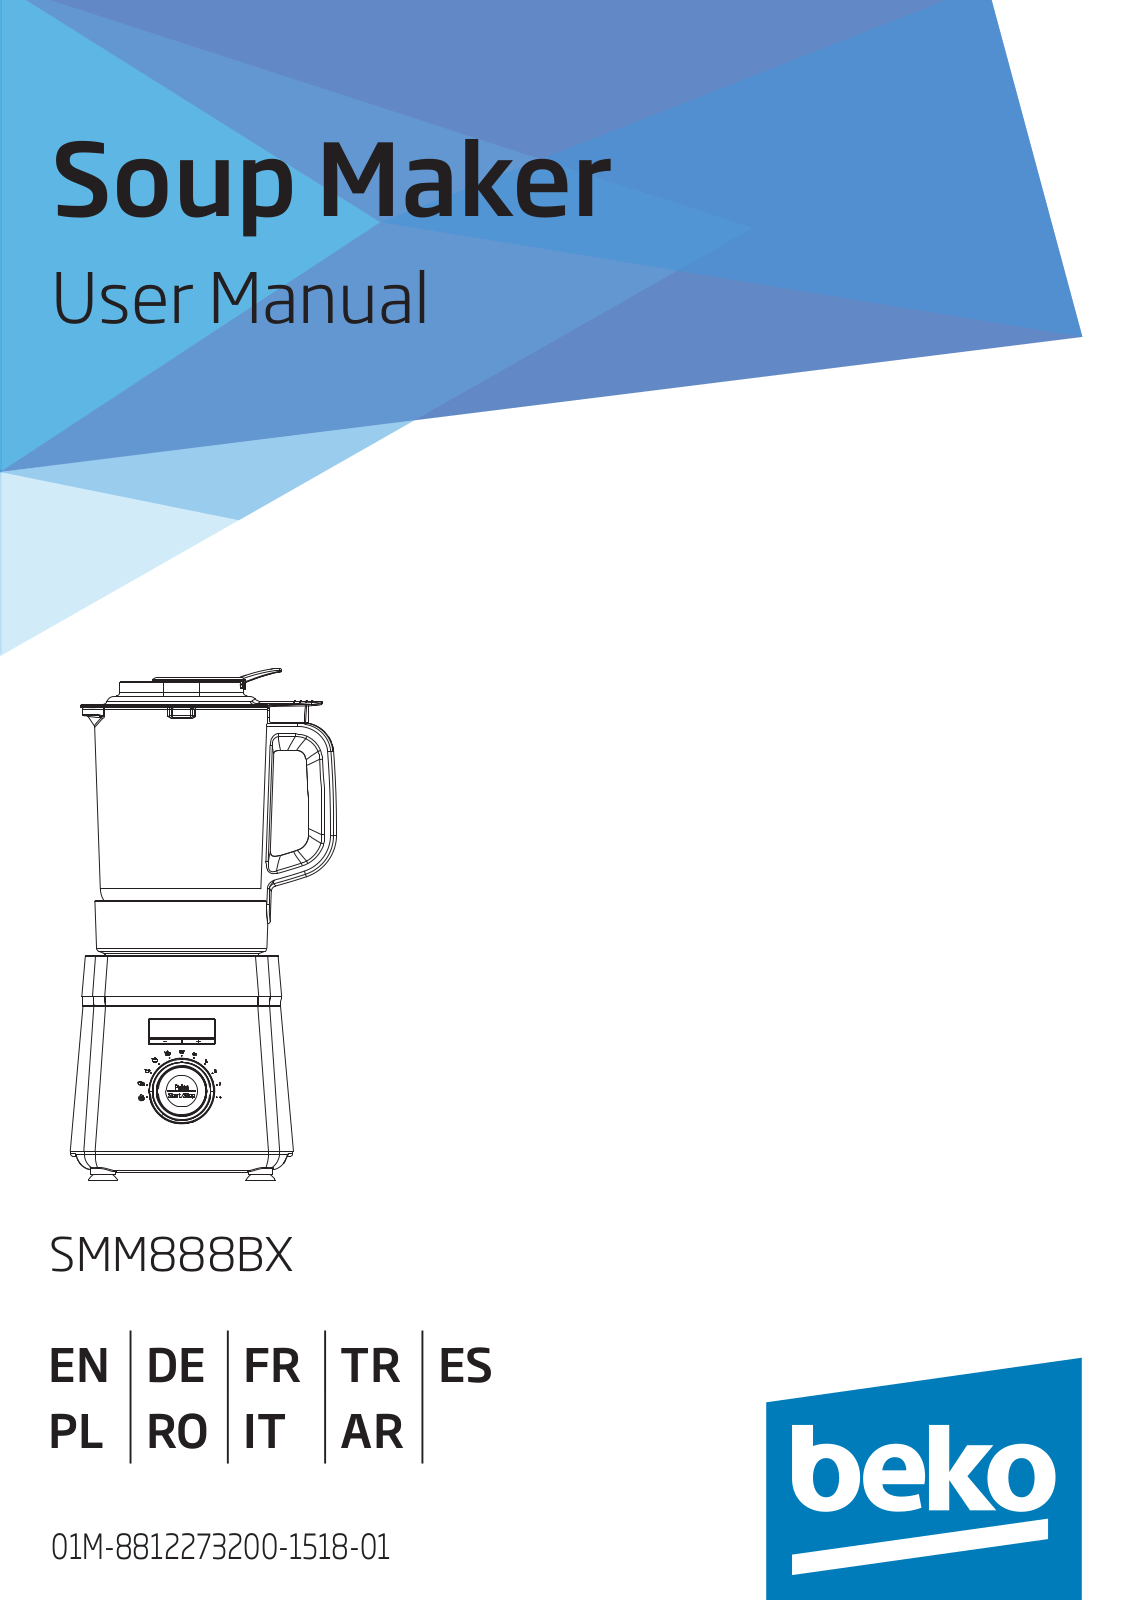 BEKO SMM 888B X User Manual